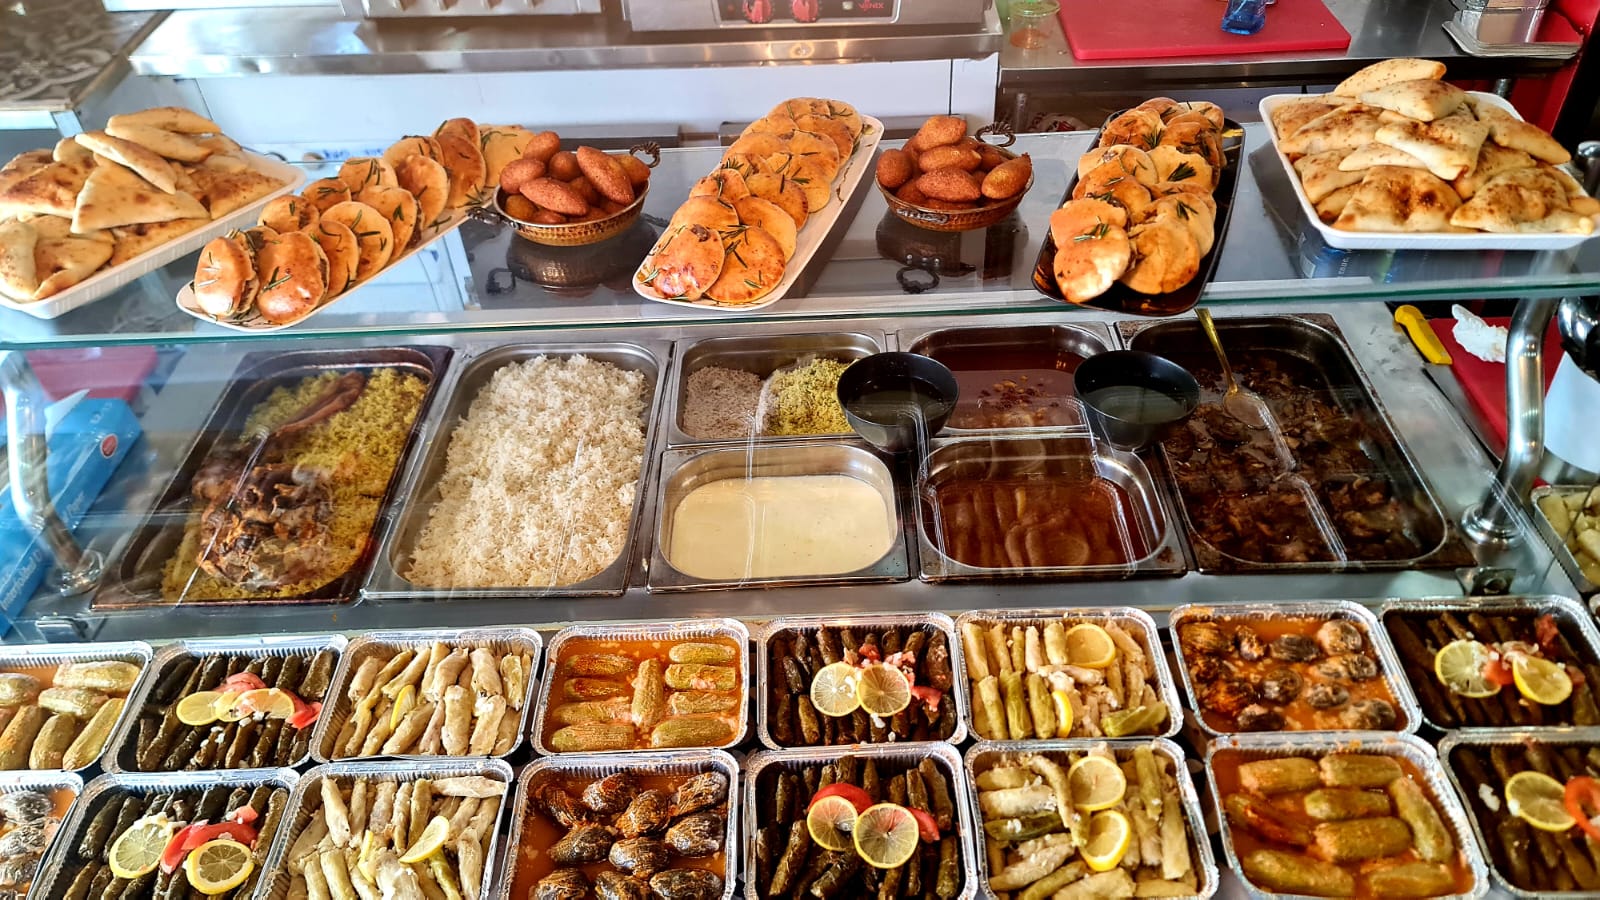 عروض وتخفيضات جديدة في مطعم طربوش بمناسبة حلول شهر رمضان  